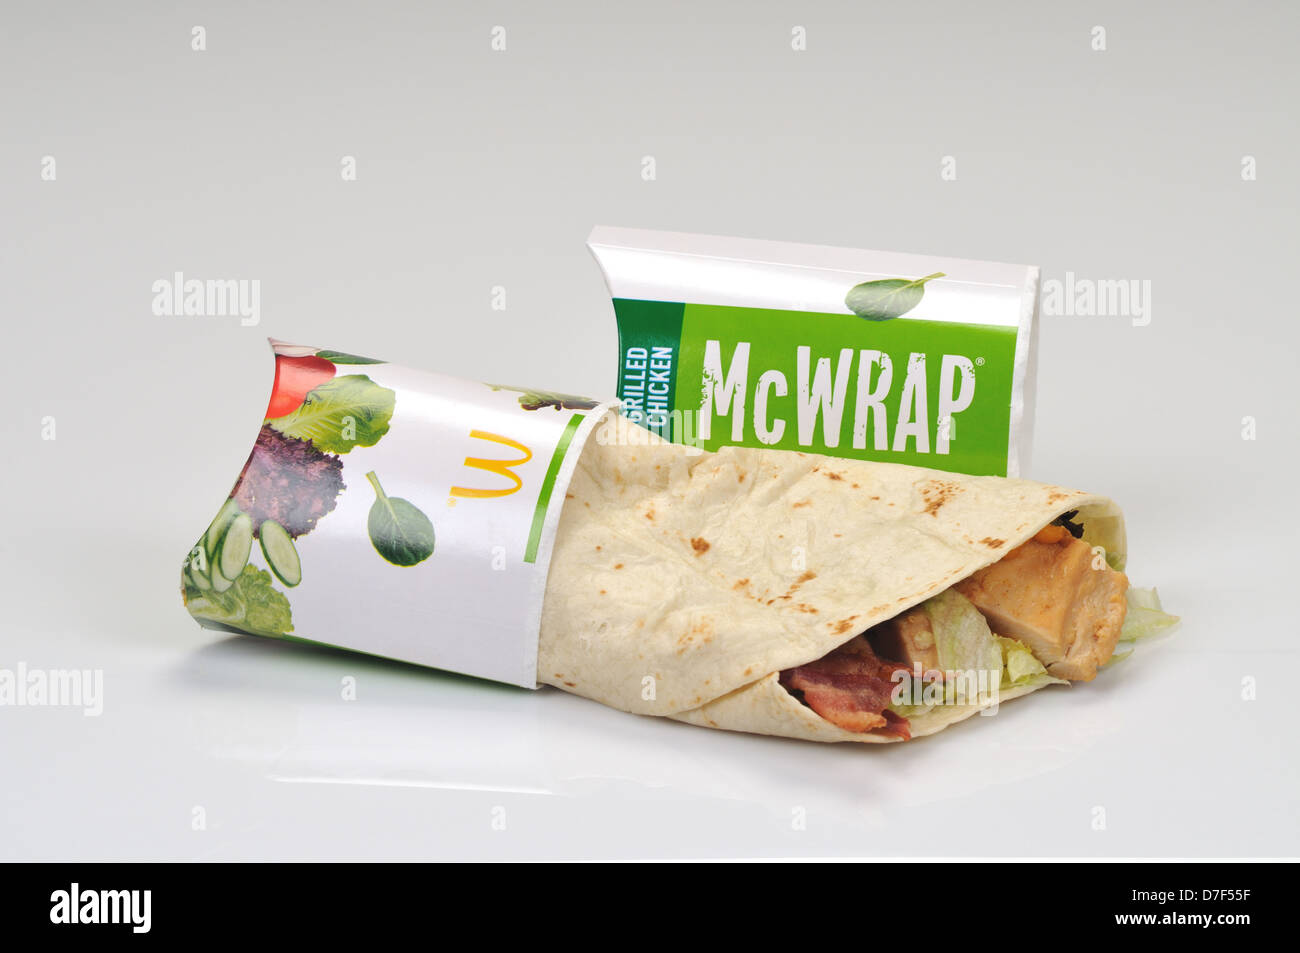 Poulet grillé McDonalds McWrap avec emballage sur fond blanc, découpe. USA Banque D'Images